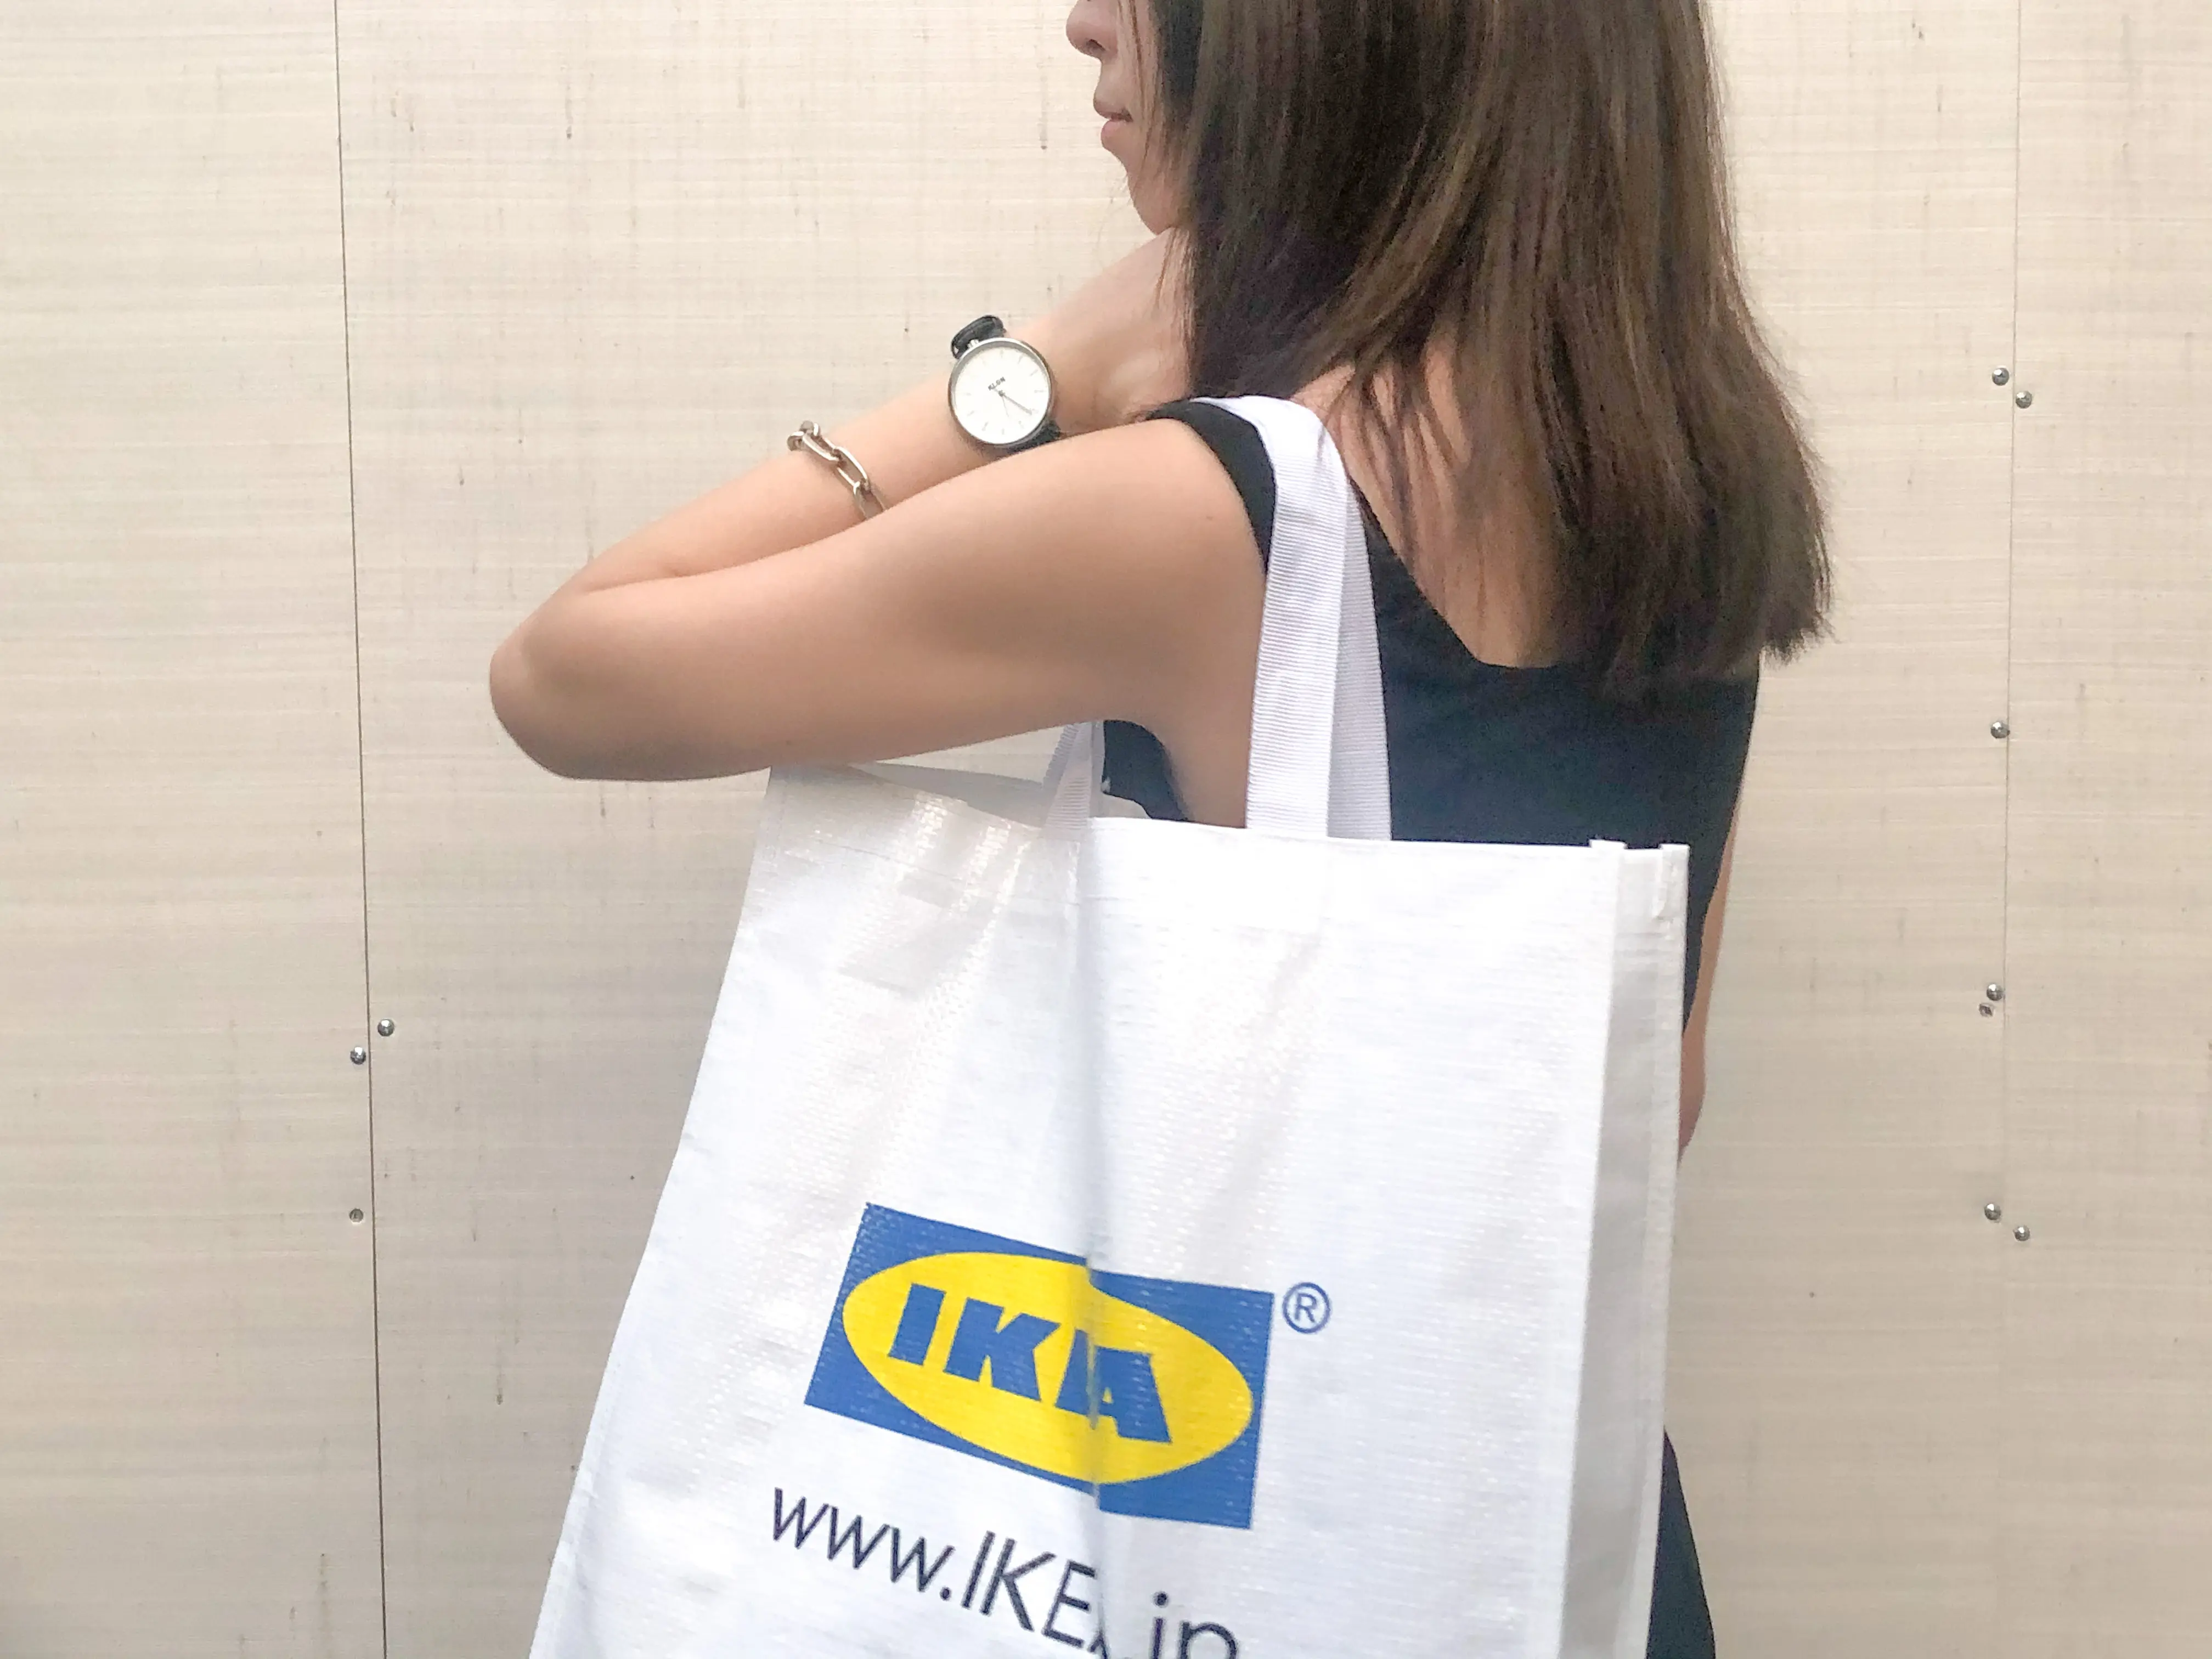 エコバッグ 199円 丈夫でかわいい Ikea のklamby クラムビー が超つかえる Moreインフルエンサーズブログ Daily More